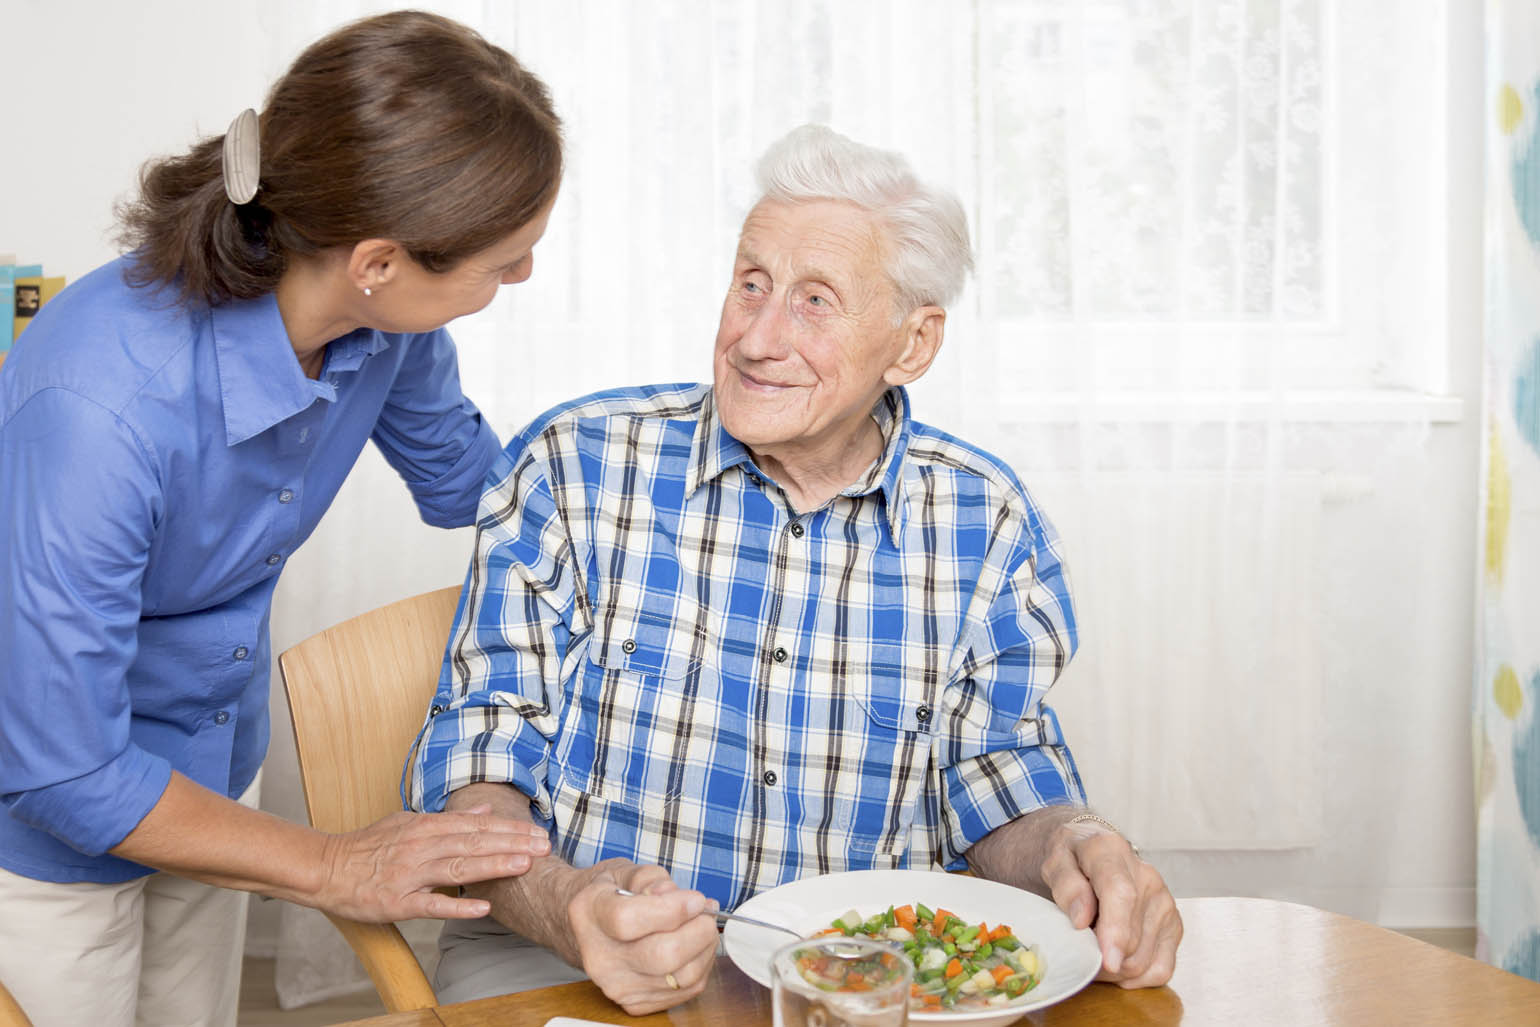 Tips for Making Family Caregiving Easier